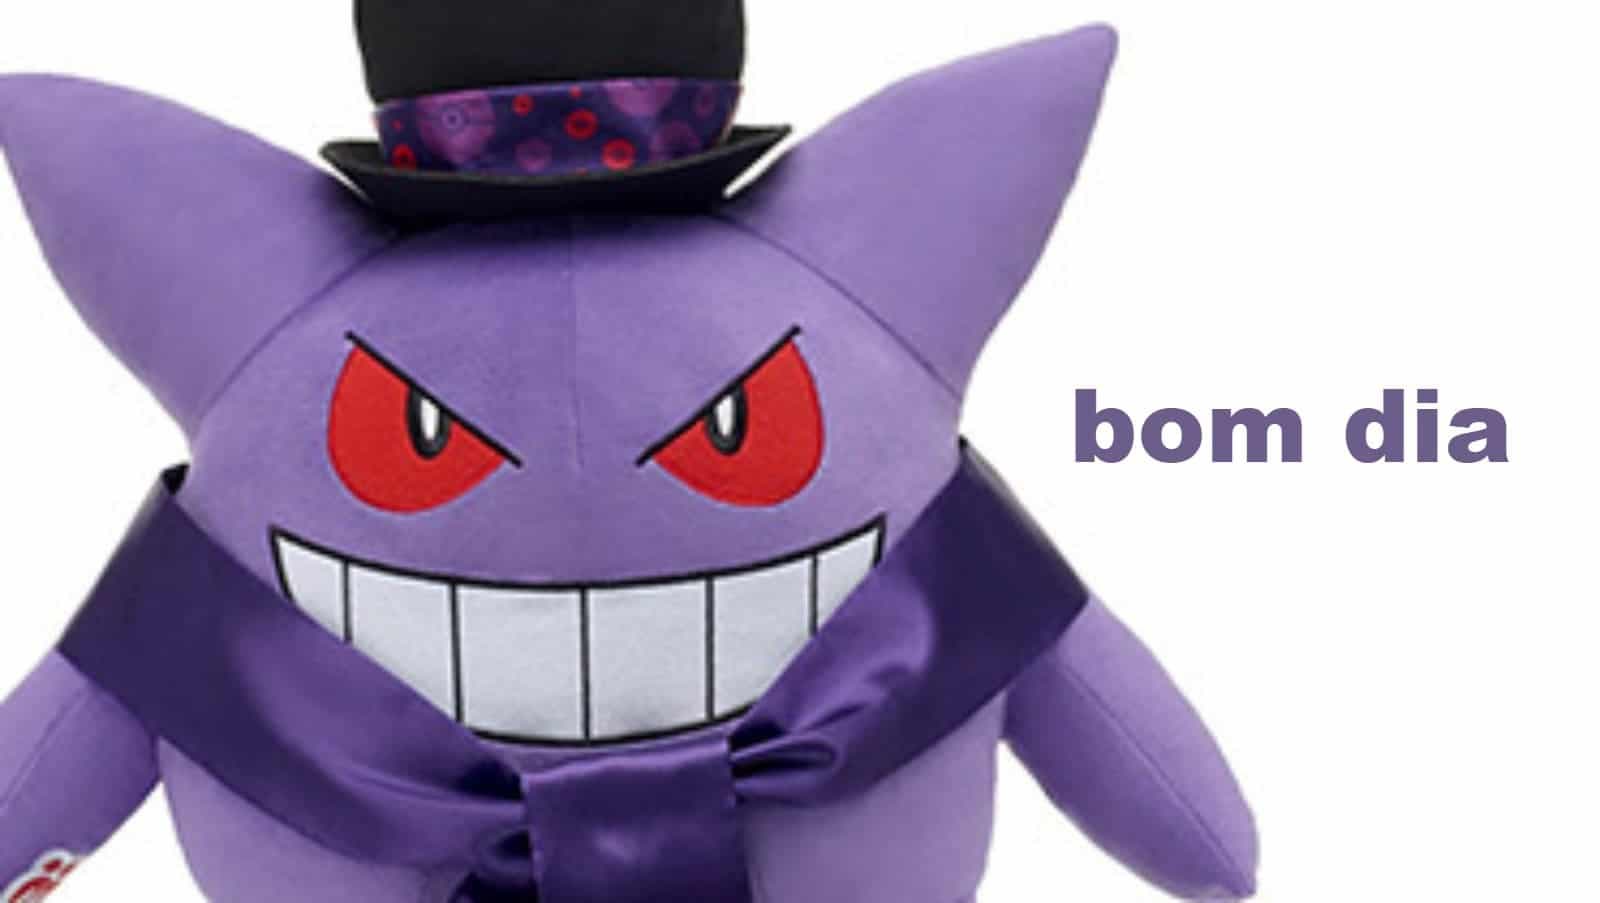 Gengar roba el foco Pokémon para este Halloween con merchandising y actividades